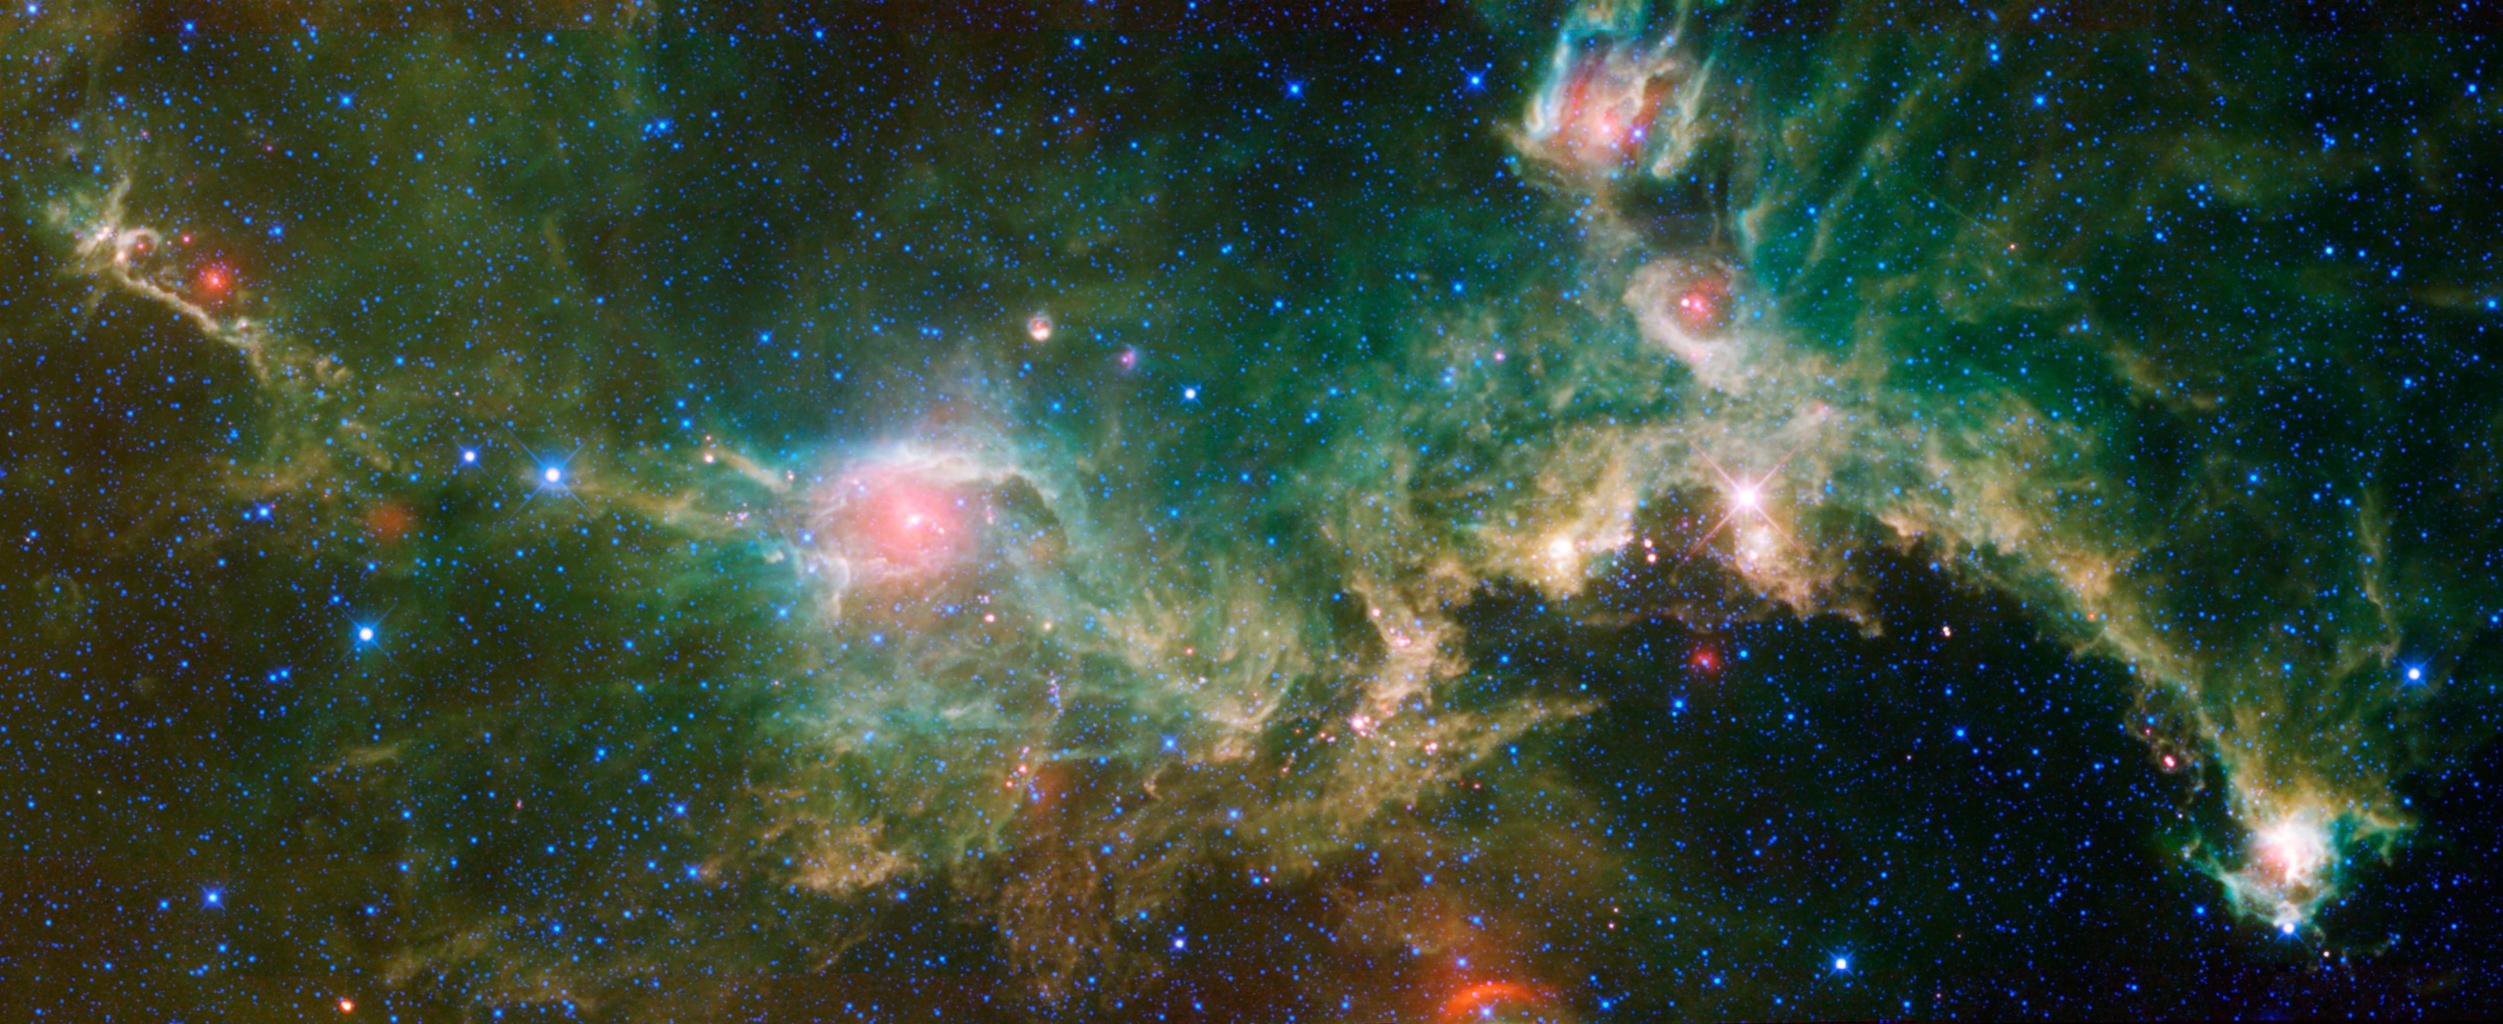 Seagull Nebula from NASA